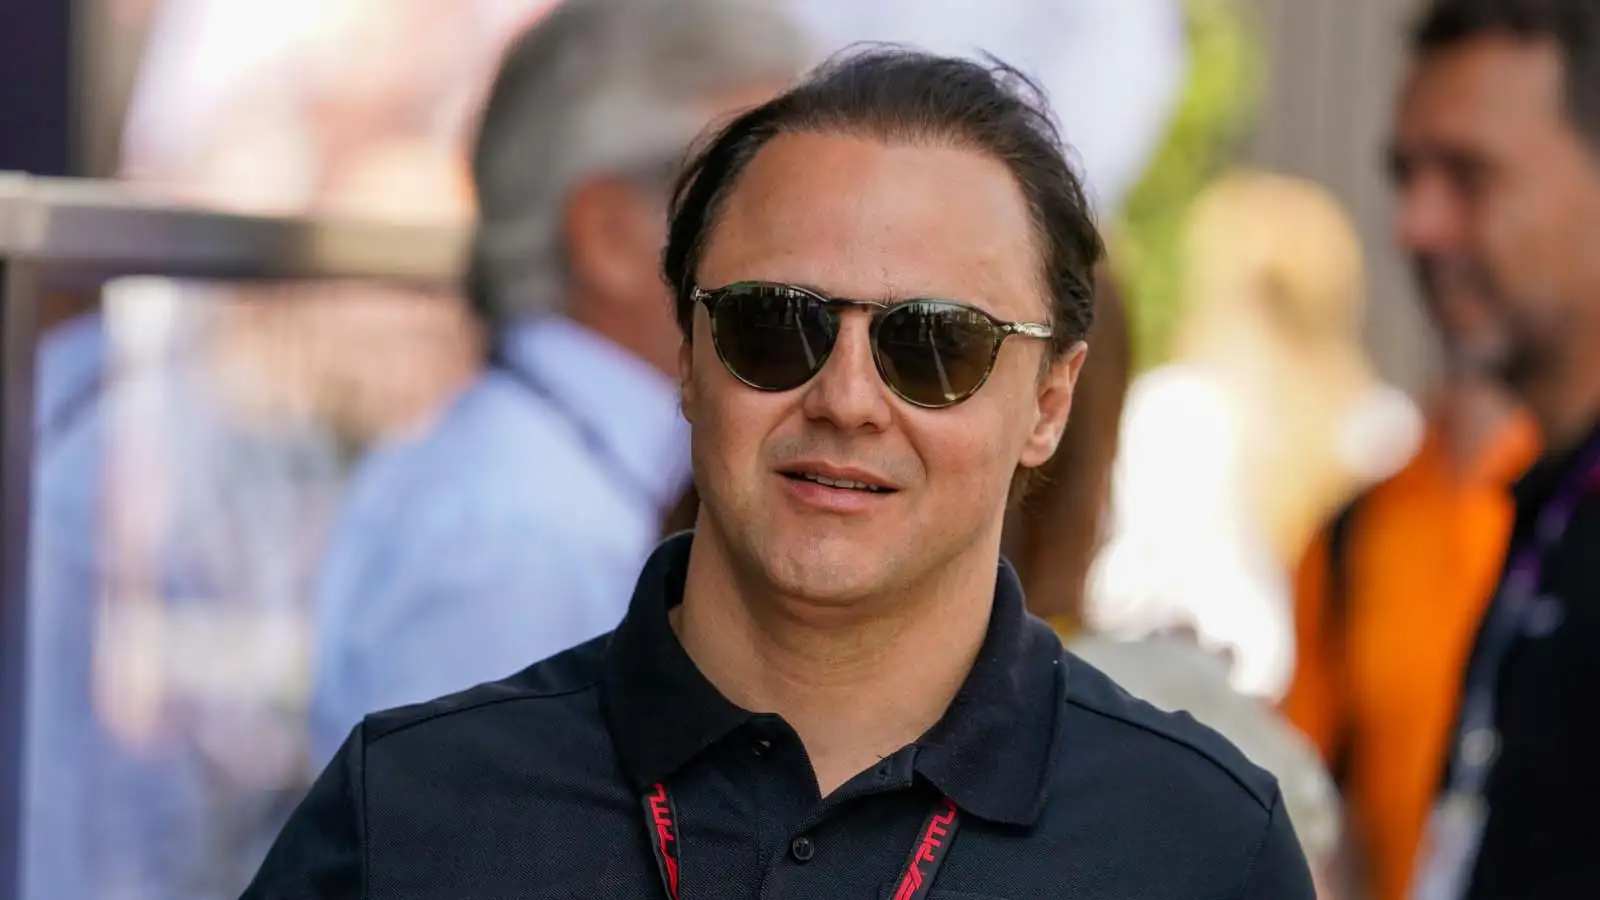 Felipe Massa attends F1 race in Monte Carlo. Monaco, May 2023.